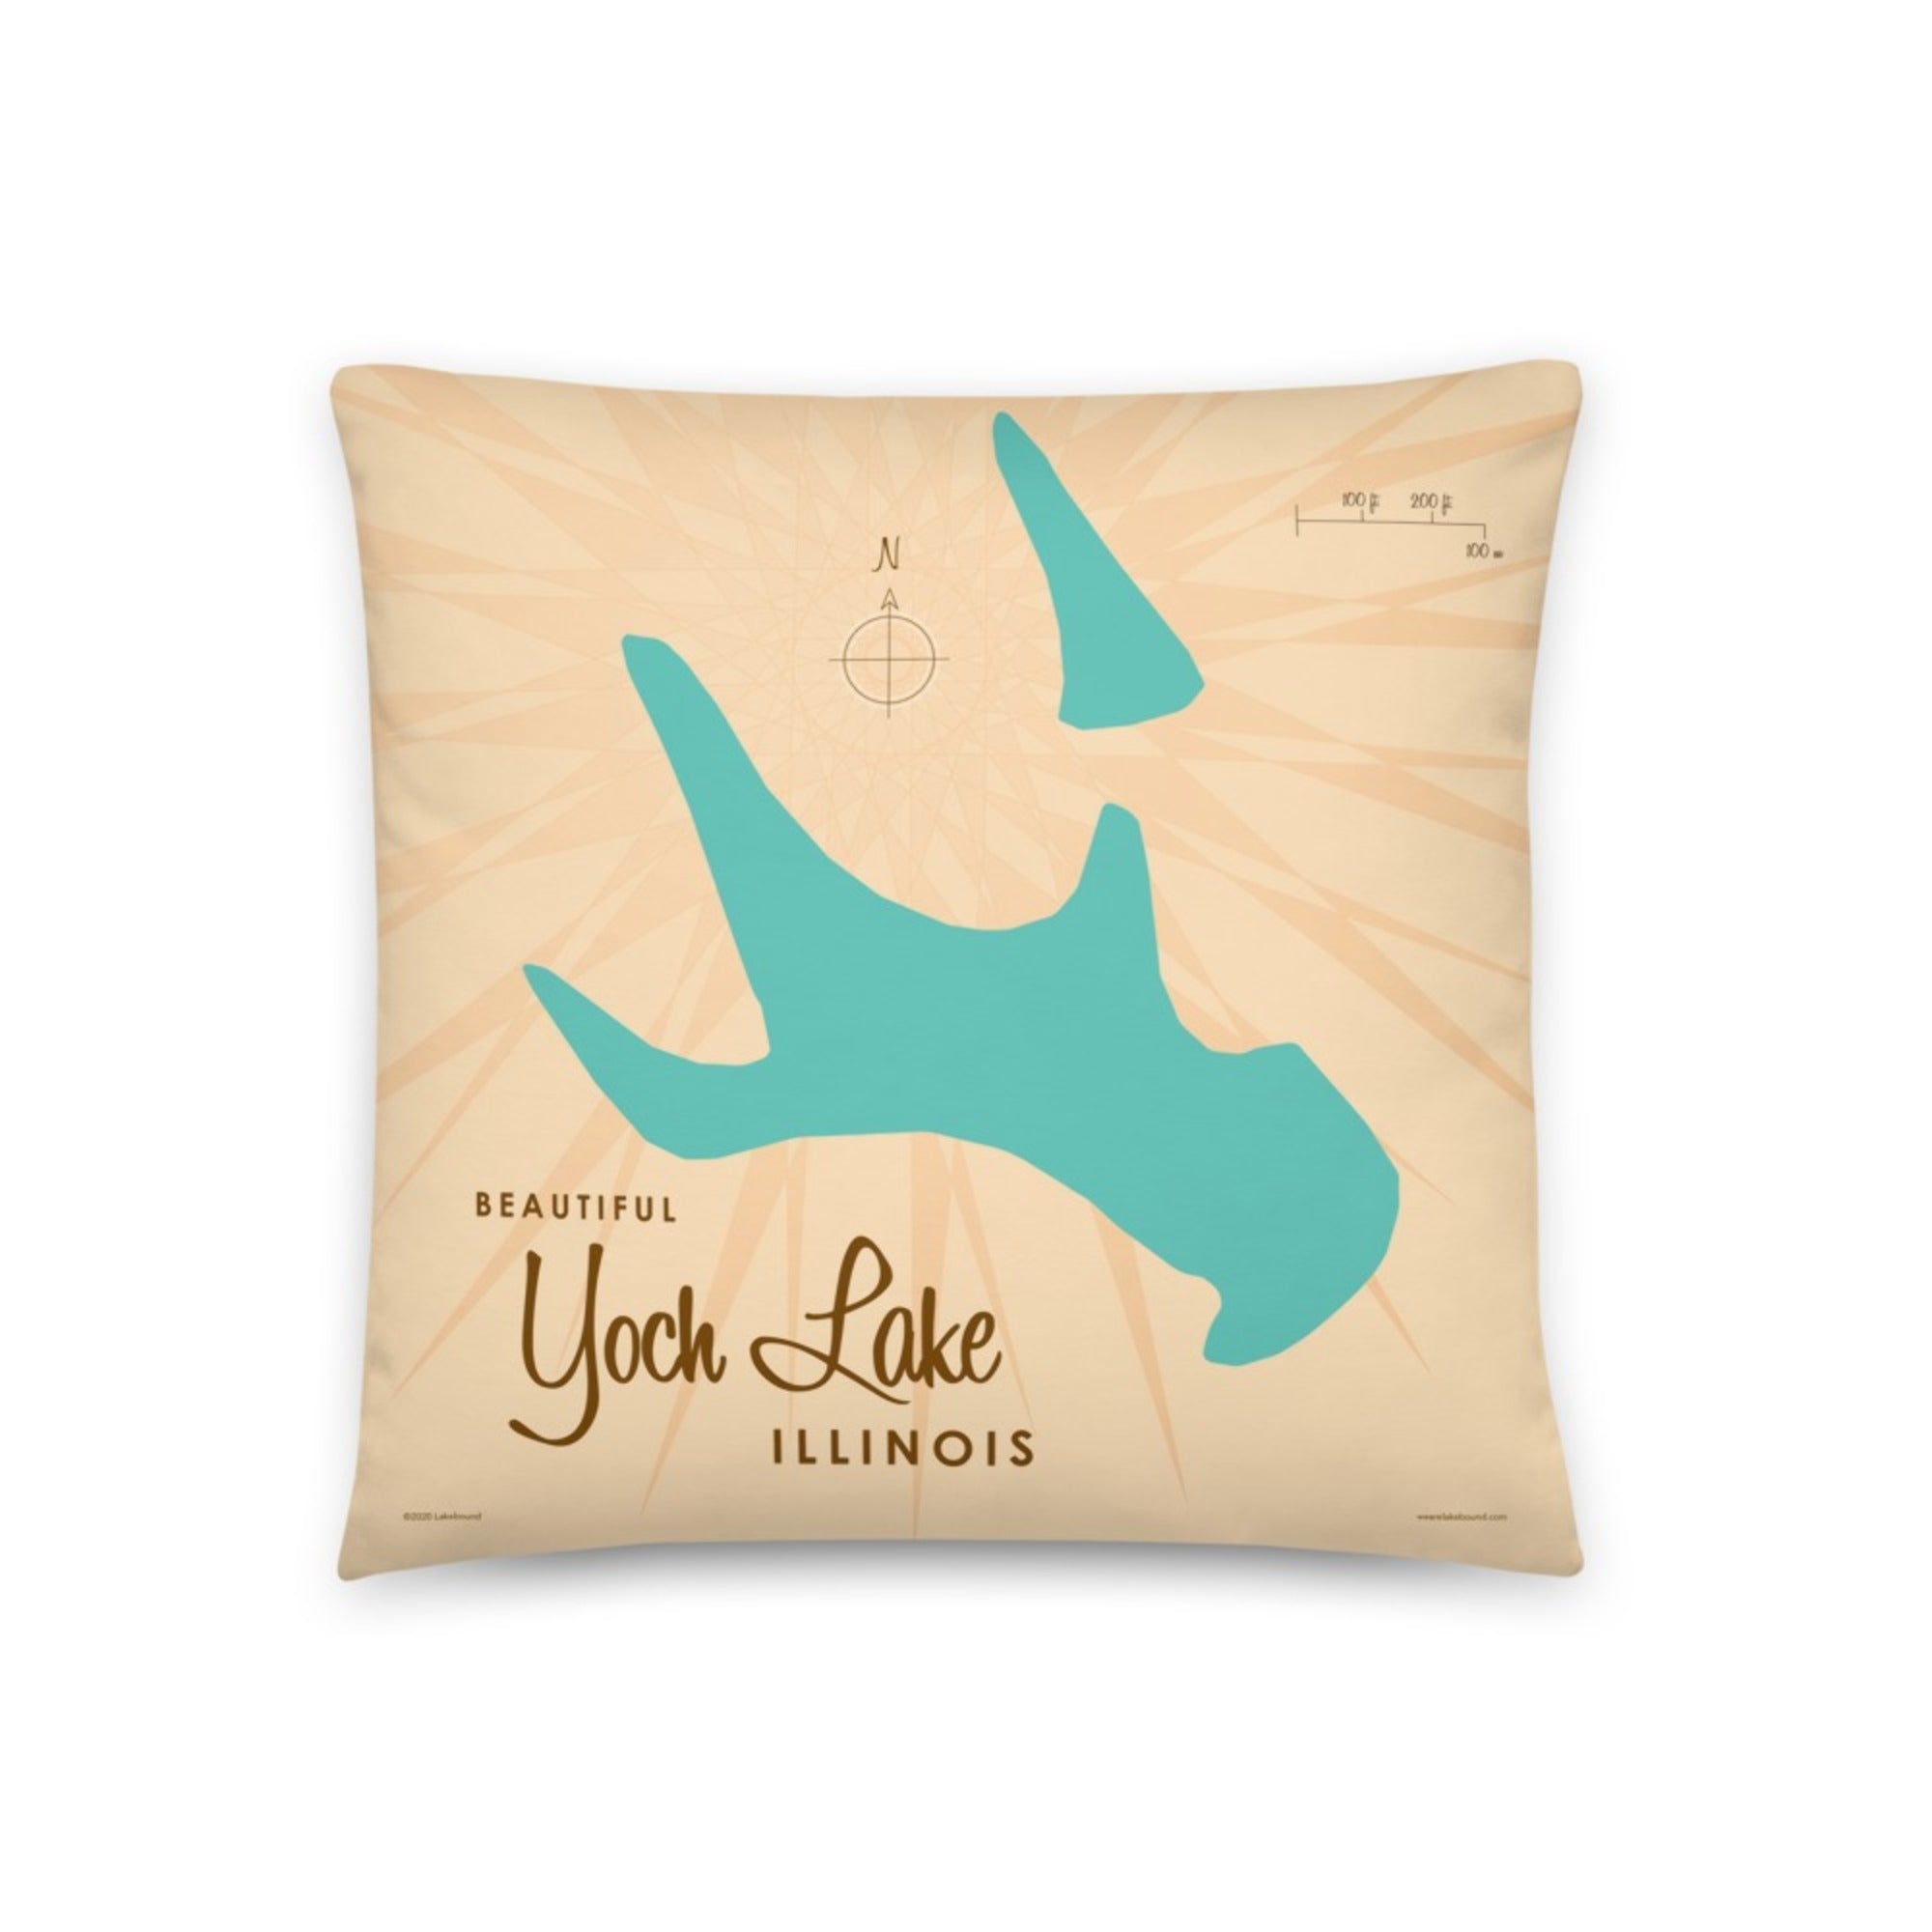 Yoch Lake Illinois Pillow